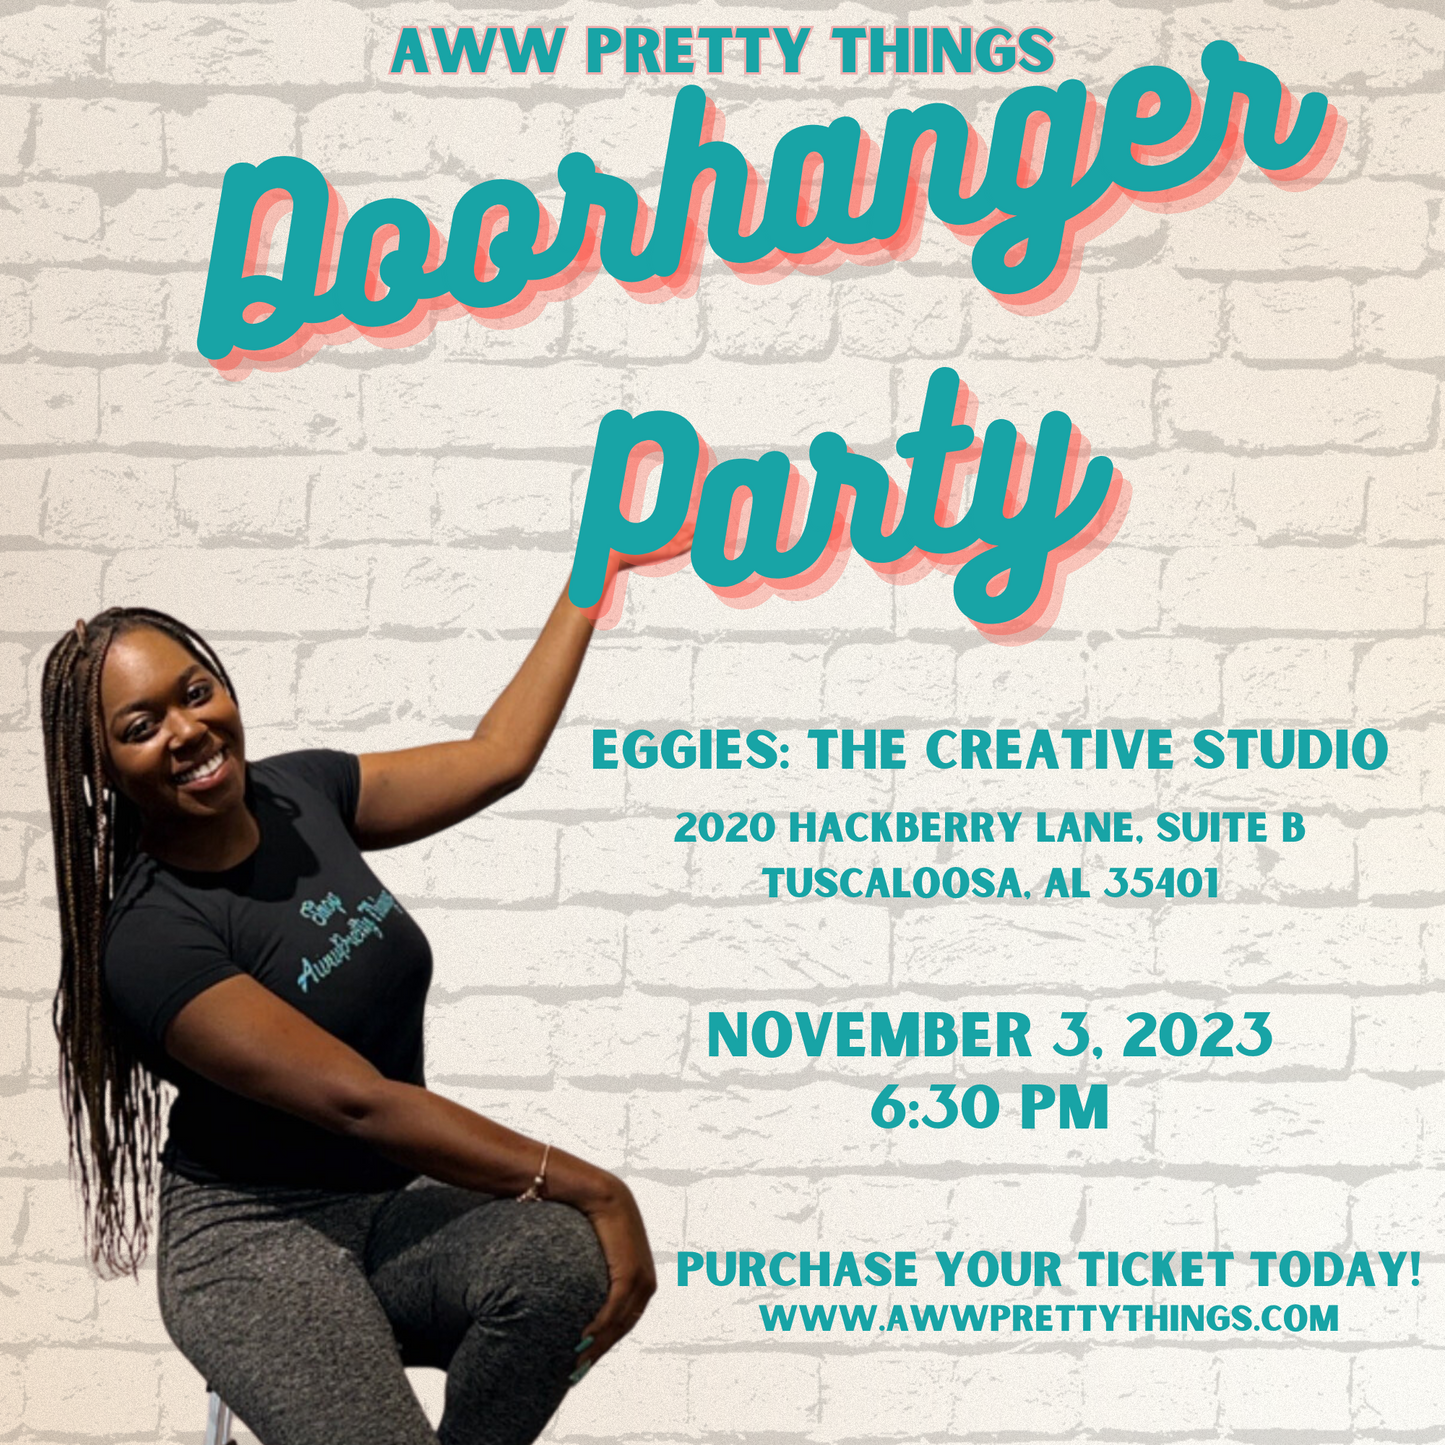 Doorhanger Party November 3, 2023 6:30 PM